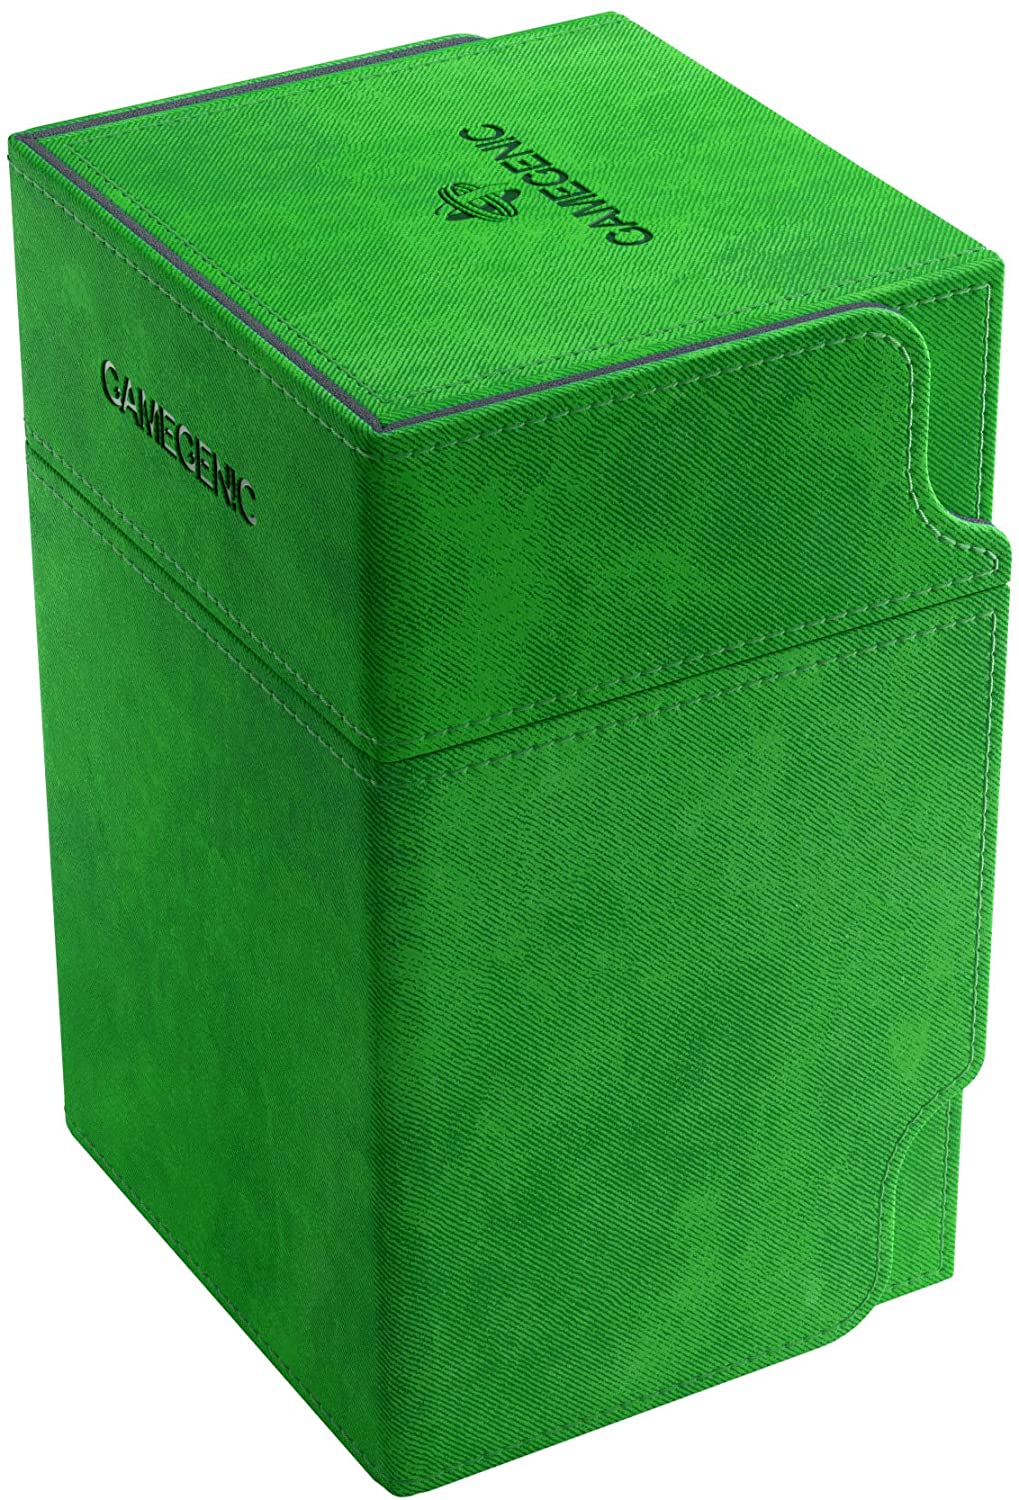 Green Watchtower Deck Box